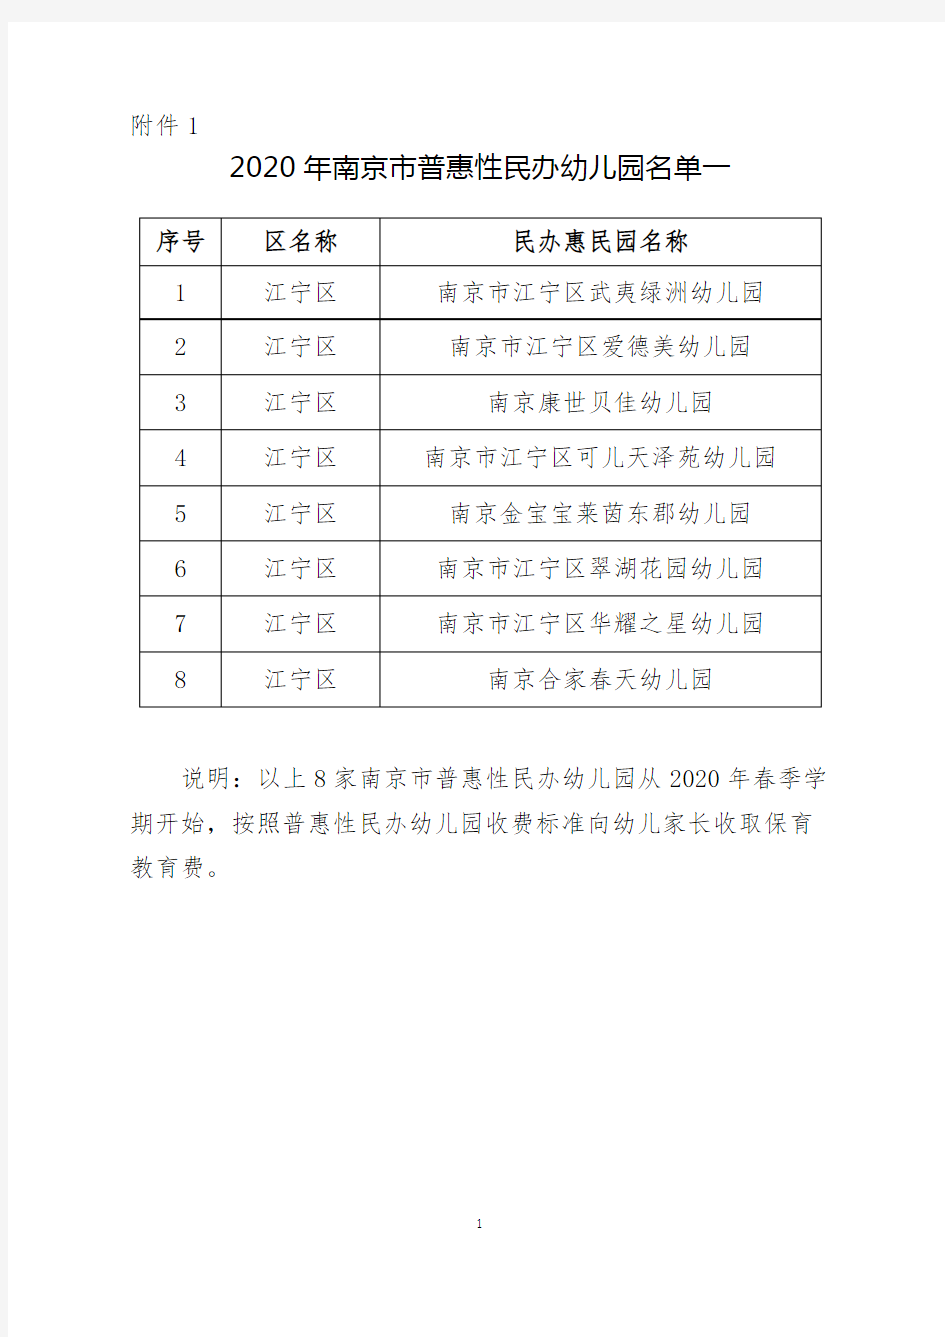 2020年南京市普惠性民办幼儿园名单一